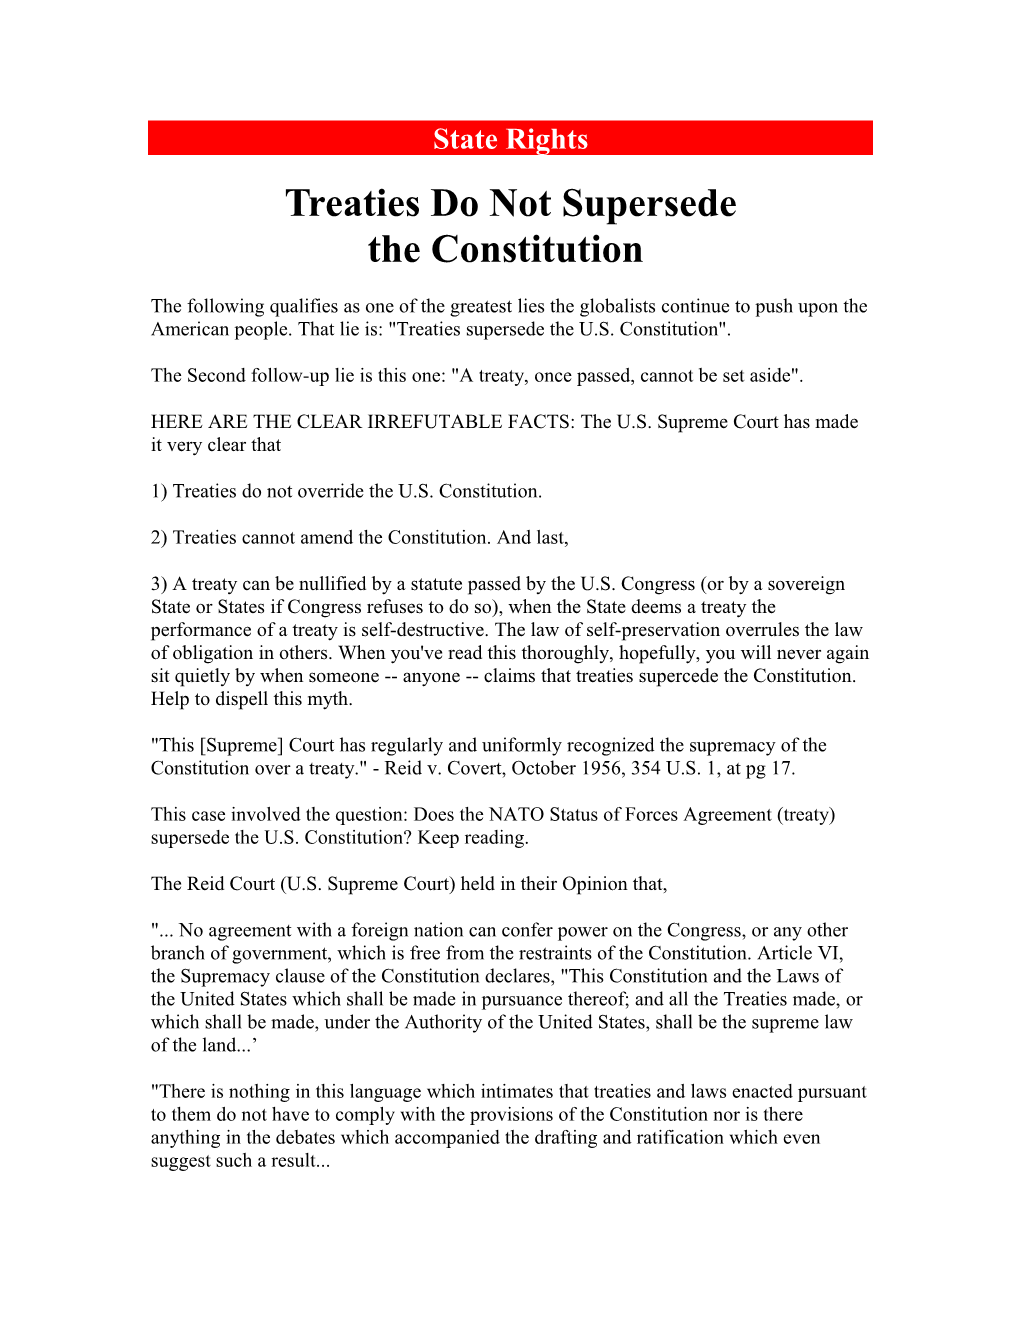 Treaties Do Not Supersede the Constitution